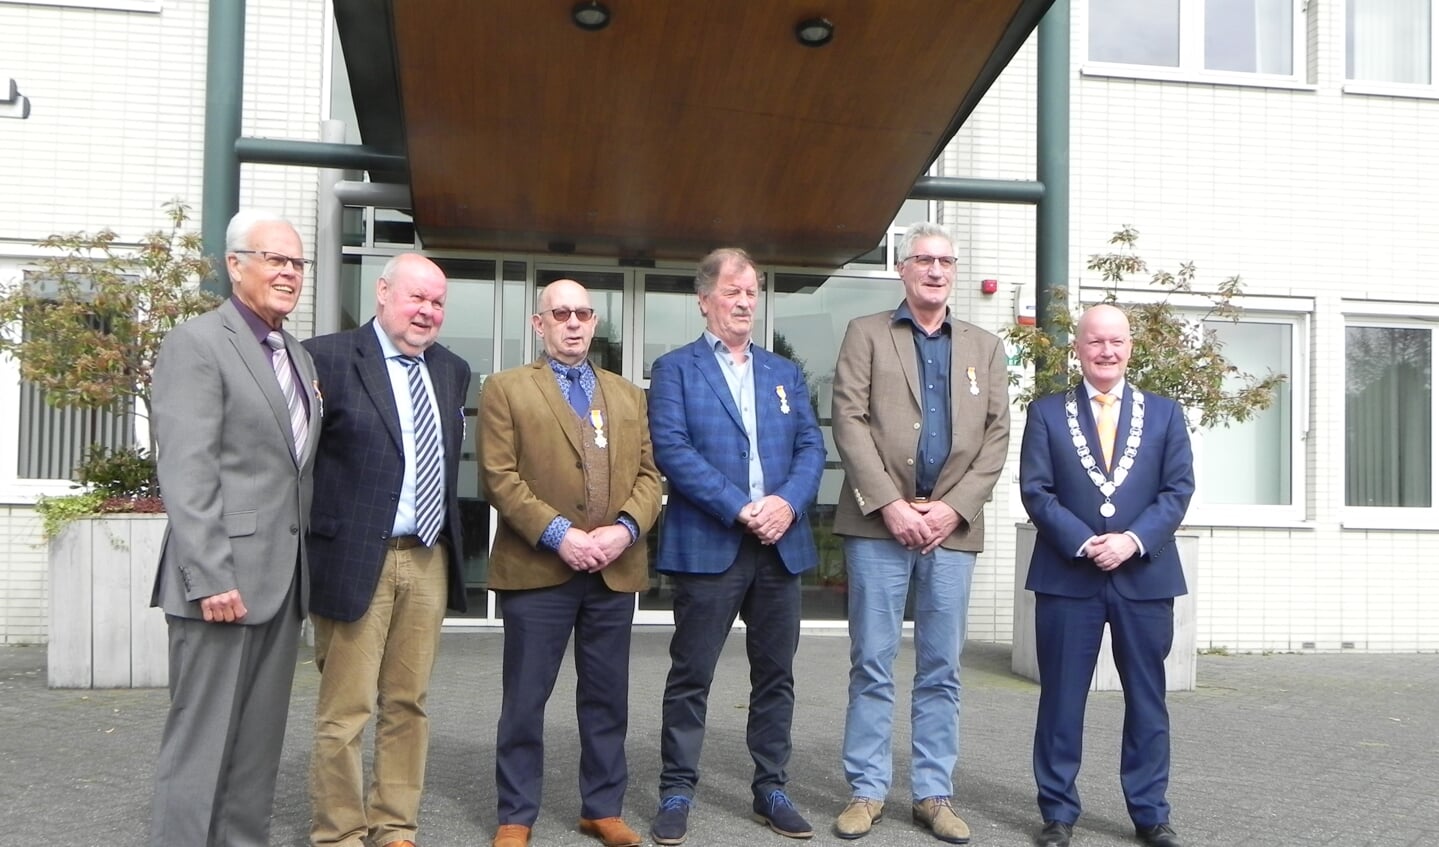 De 5 gedecoreerde mannen poseren buiten voor het stadhuis met hun net verkregen lintje en burgemeester Ruud van Bennekom.